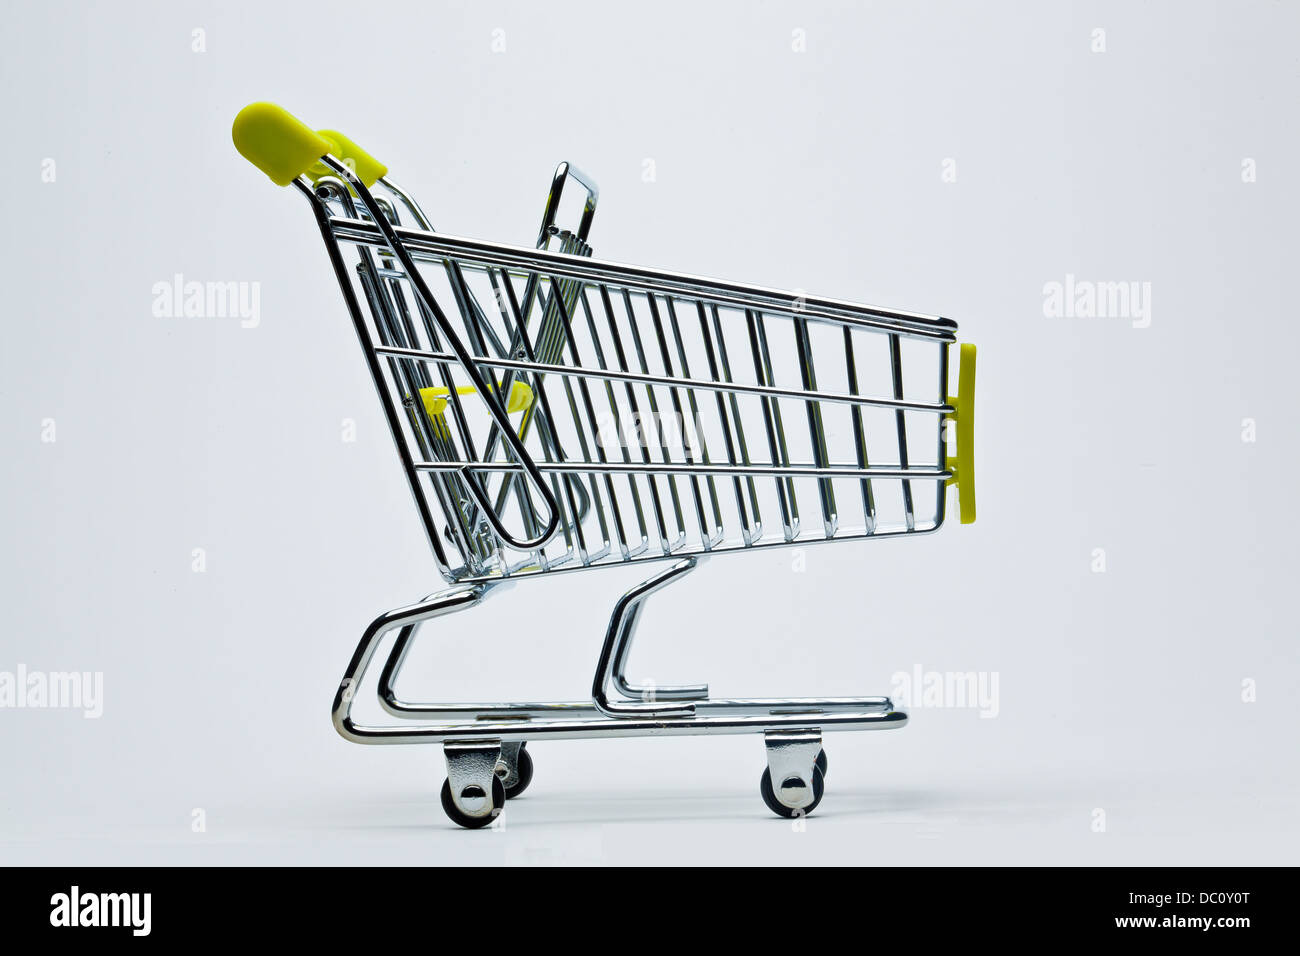 Metal carrito de compras con manija amarilla Foto de stock